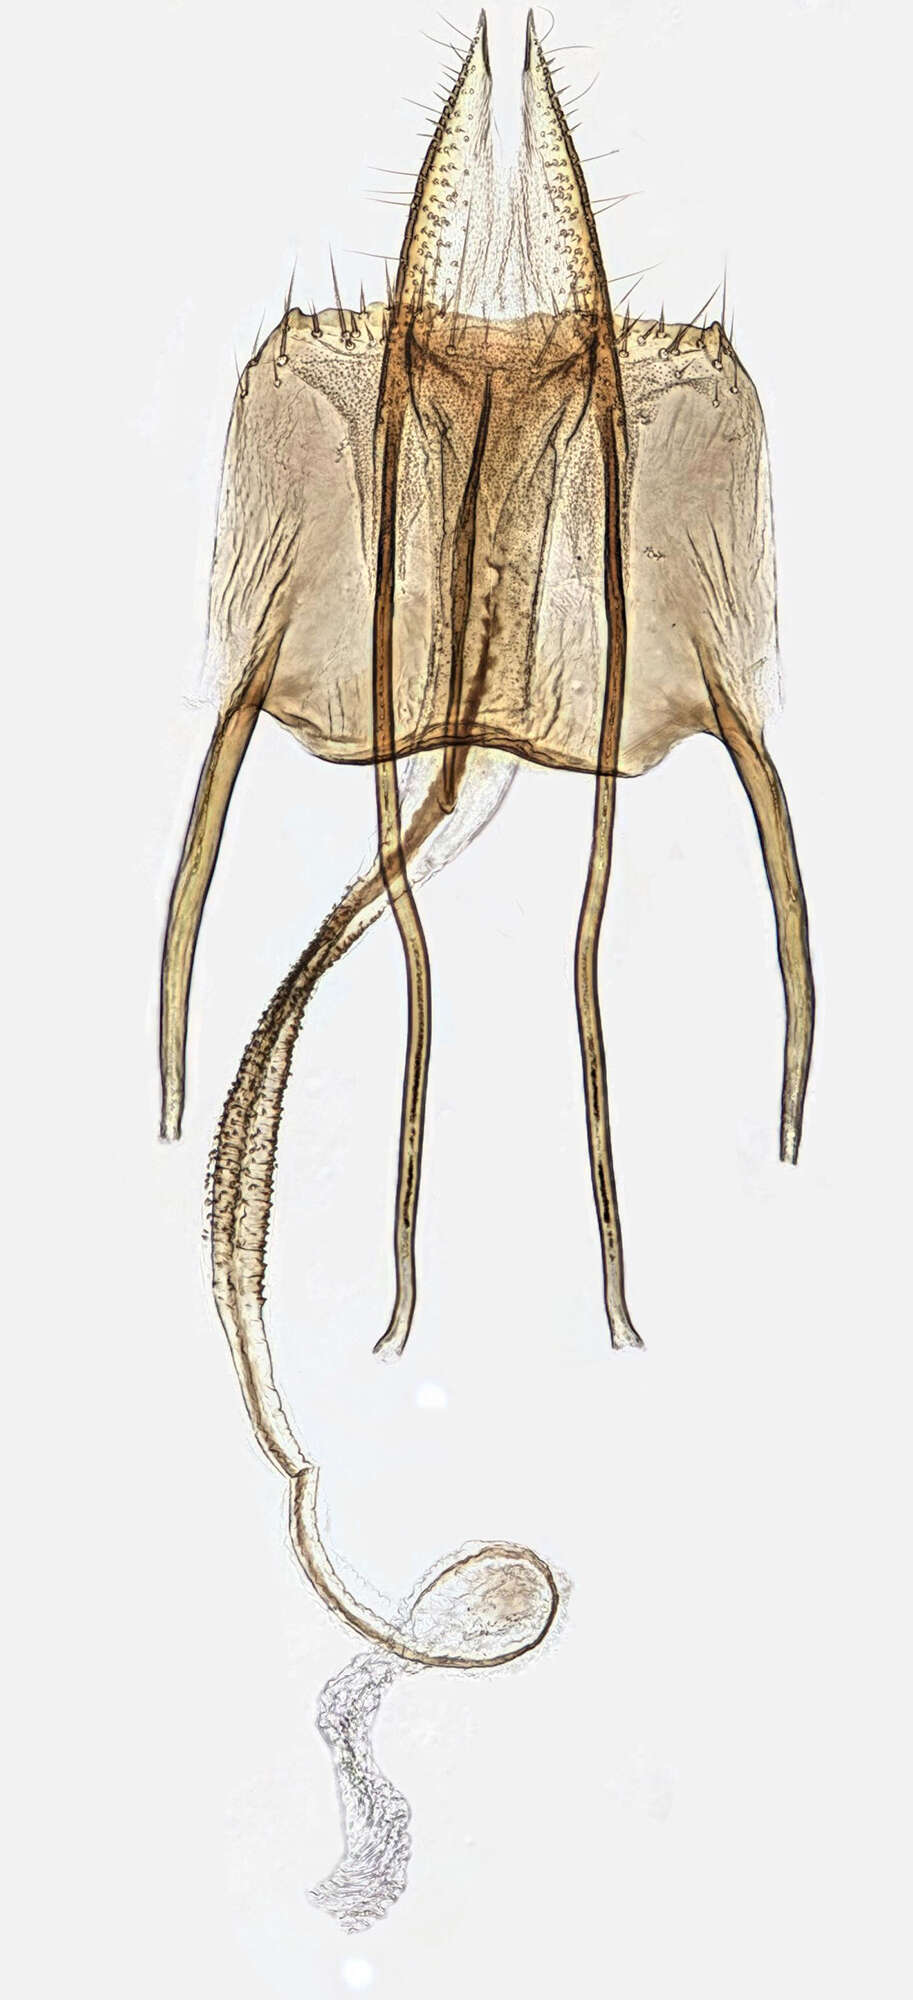 Image of Coleophora caespititiella Zeller 1839